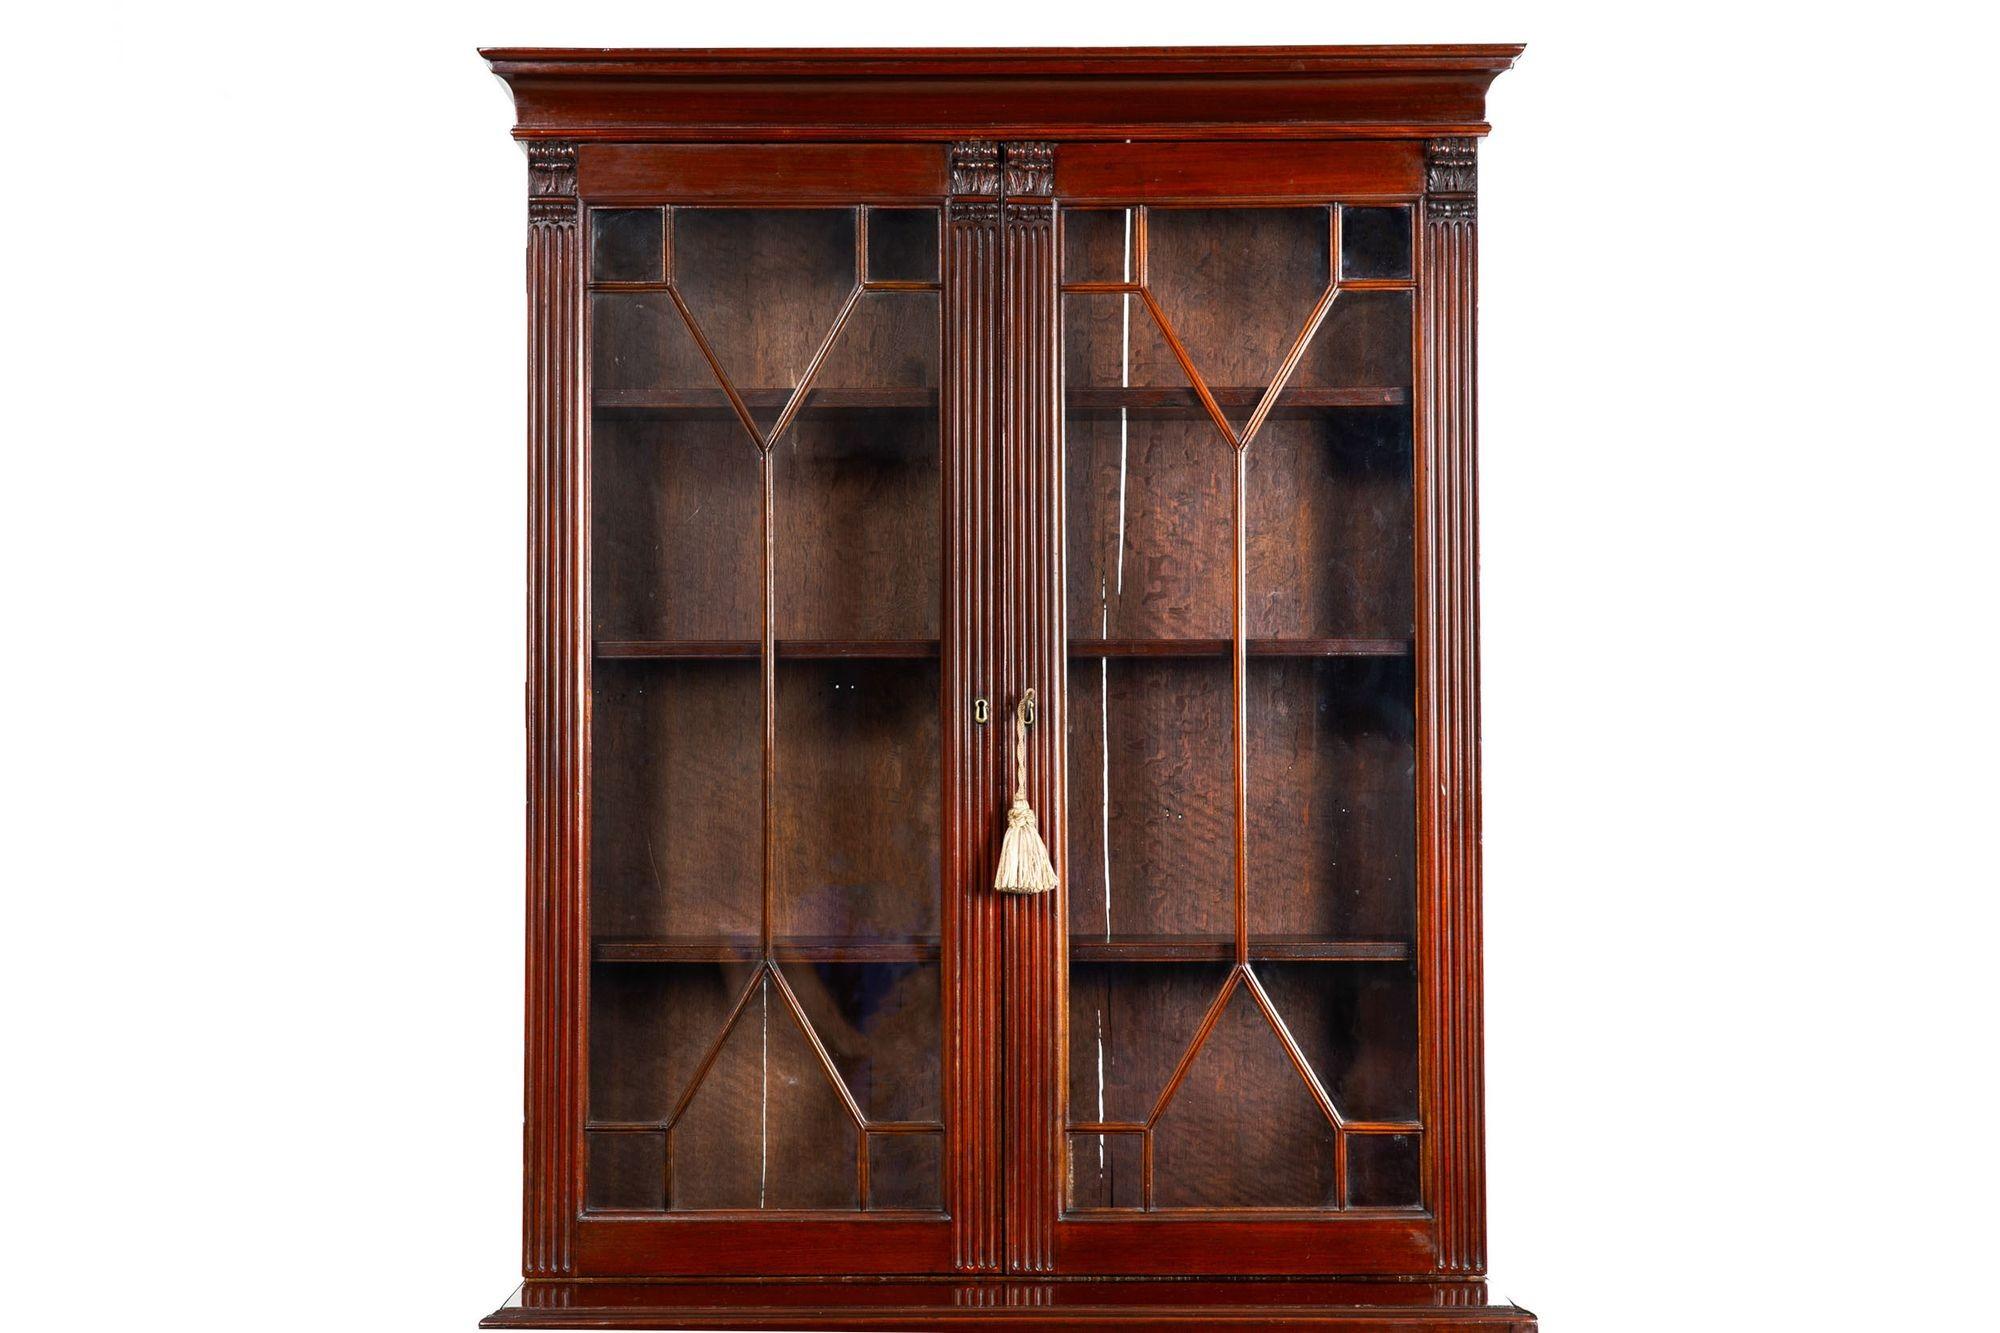 George III English Antique Mahogany Bookcase Secretary Desk circa 1780 For Sale 1